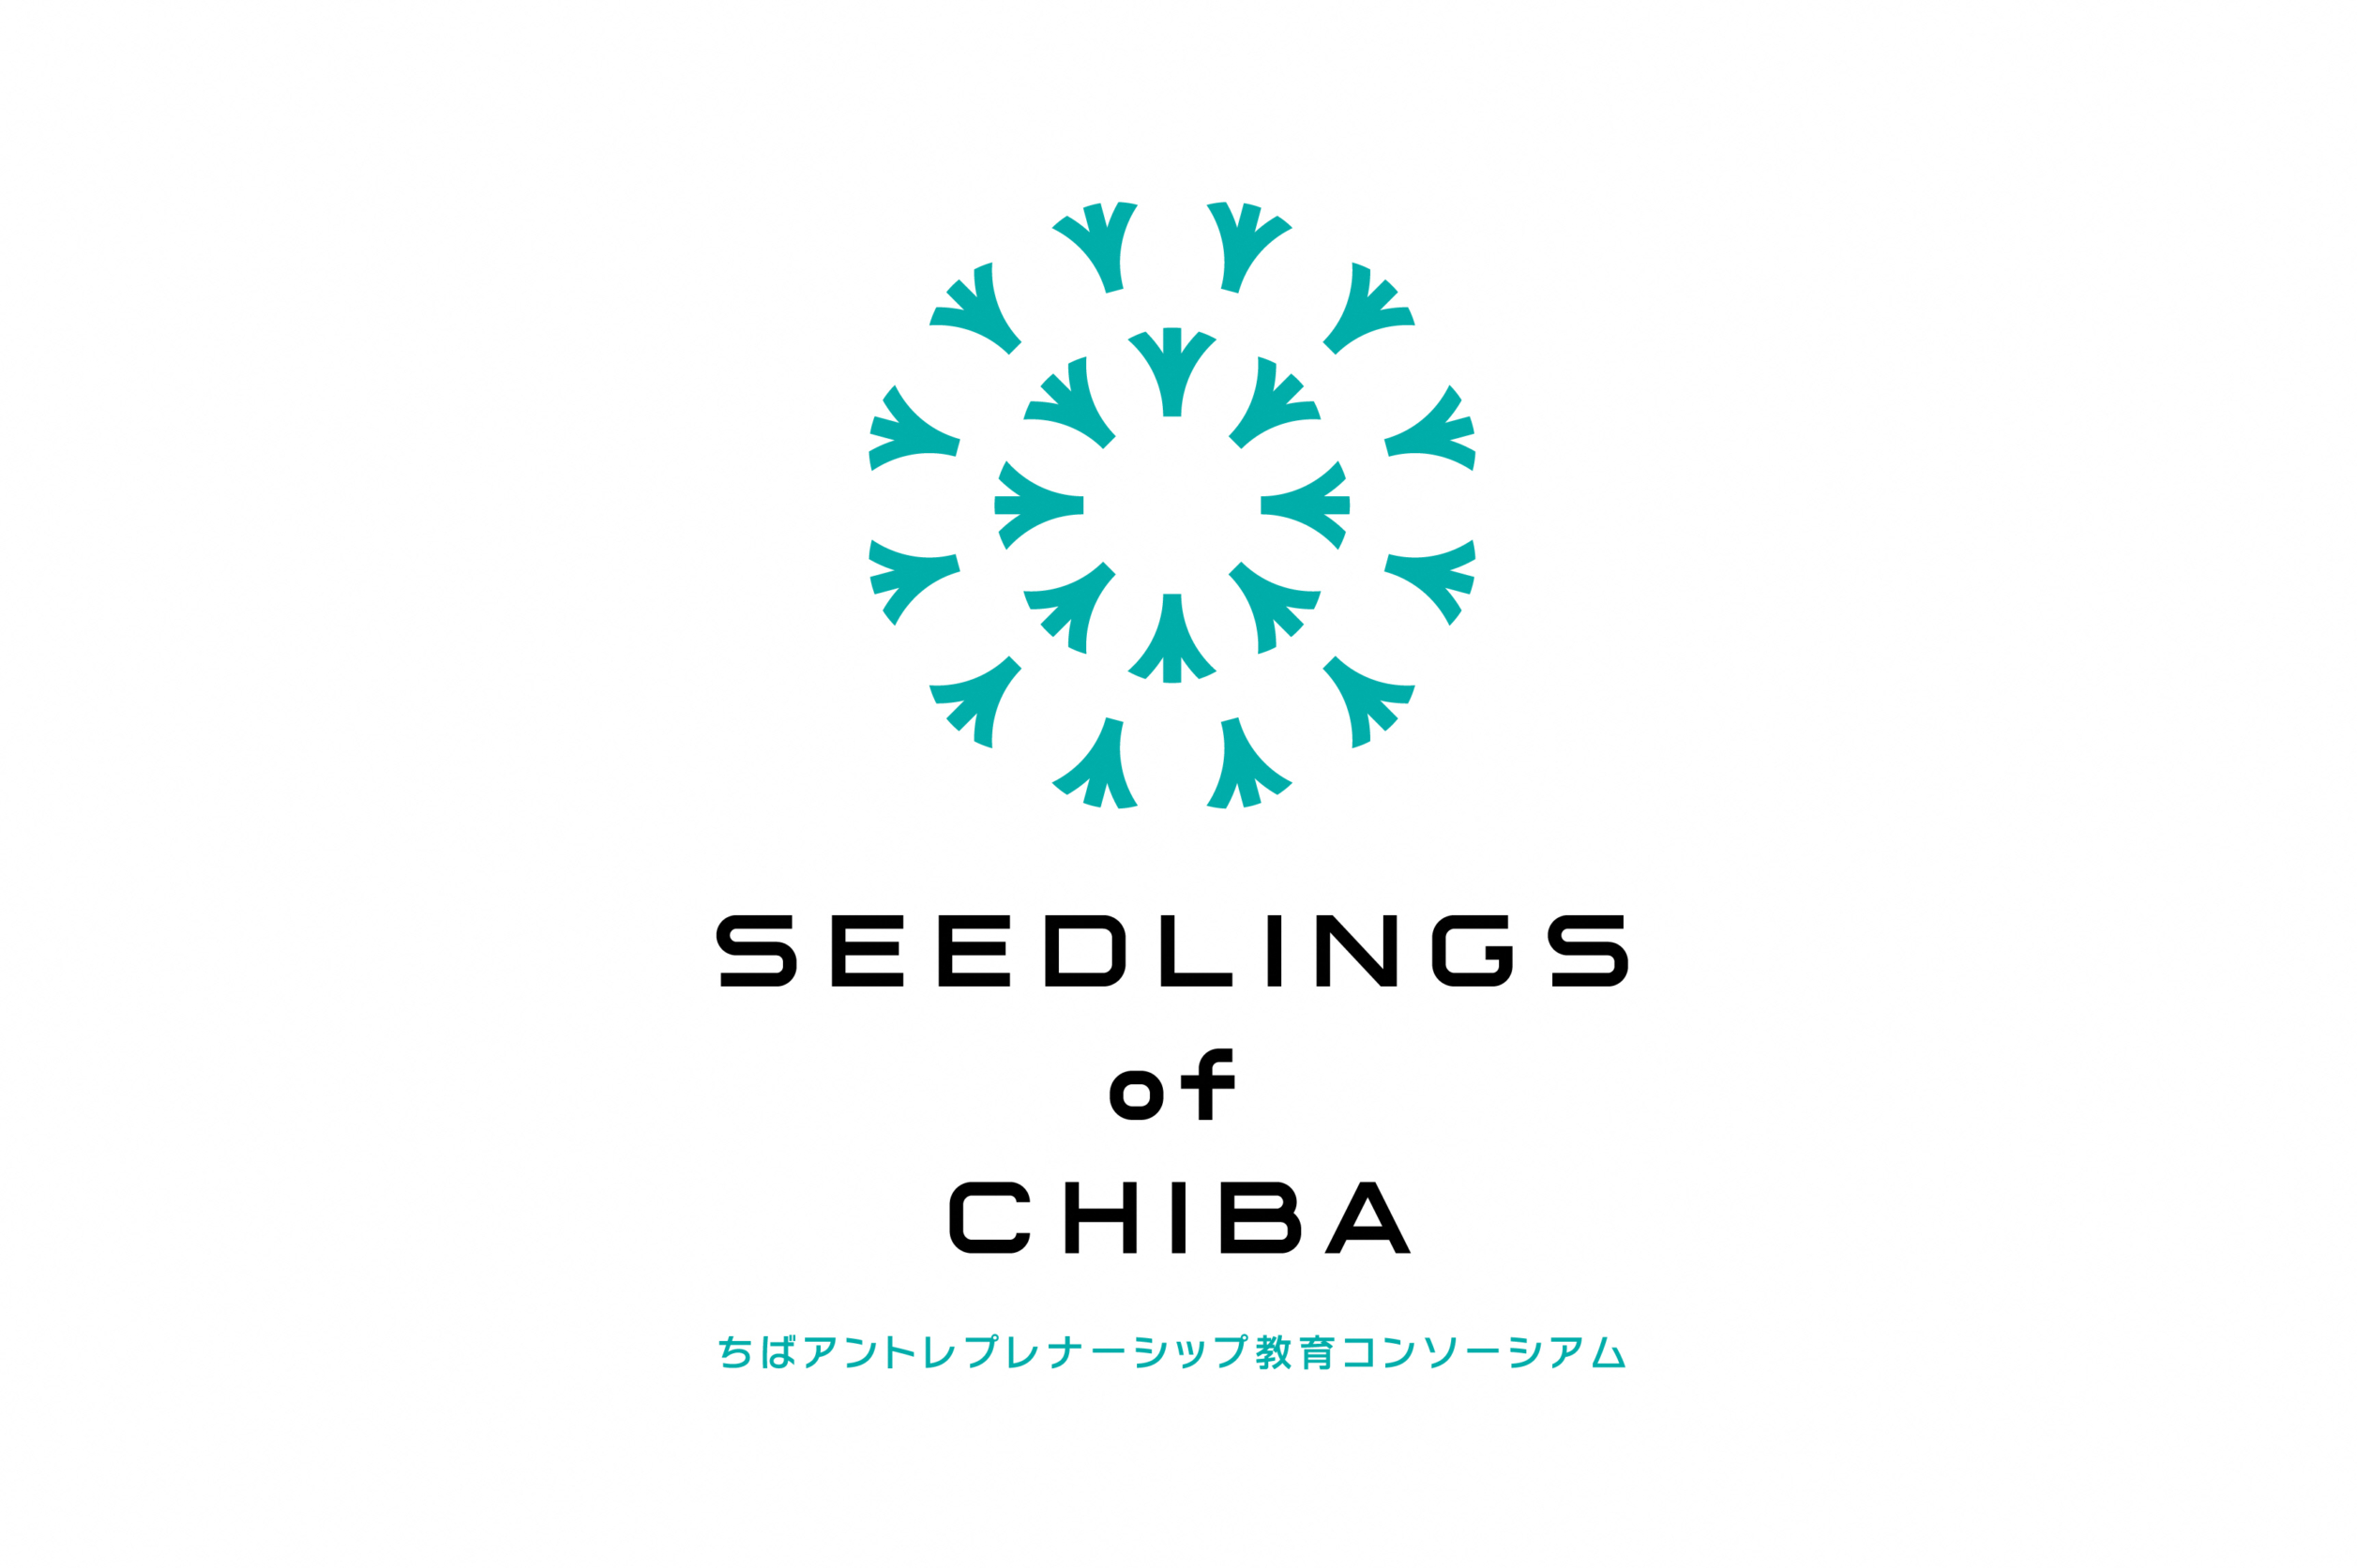 【お知らせ】ちばアントレプレナーシップ教育コンソーシアム Seedlings of Chiba へ参画いたします